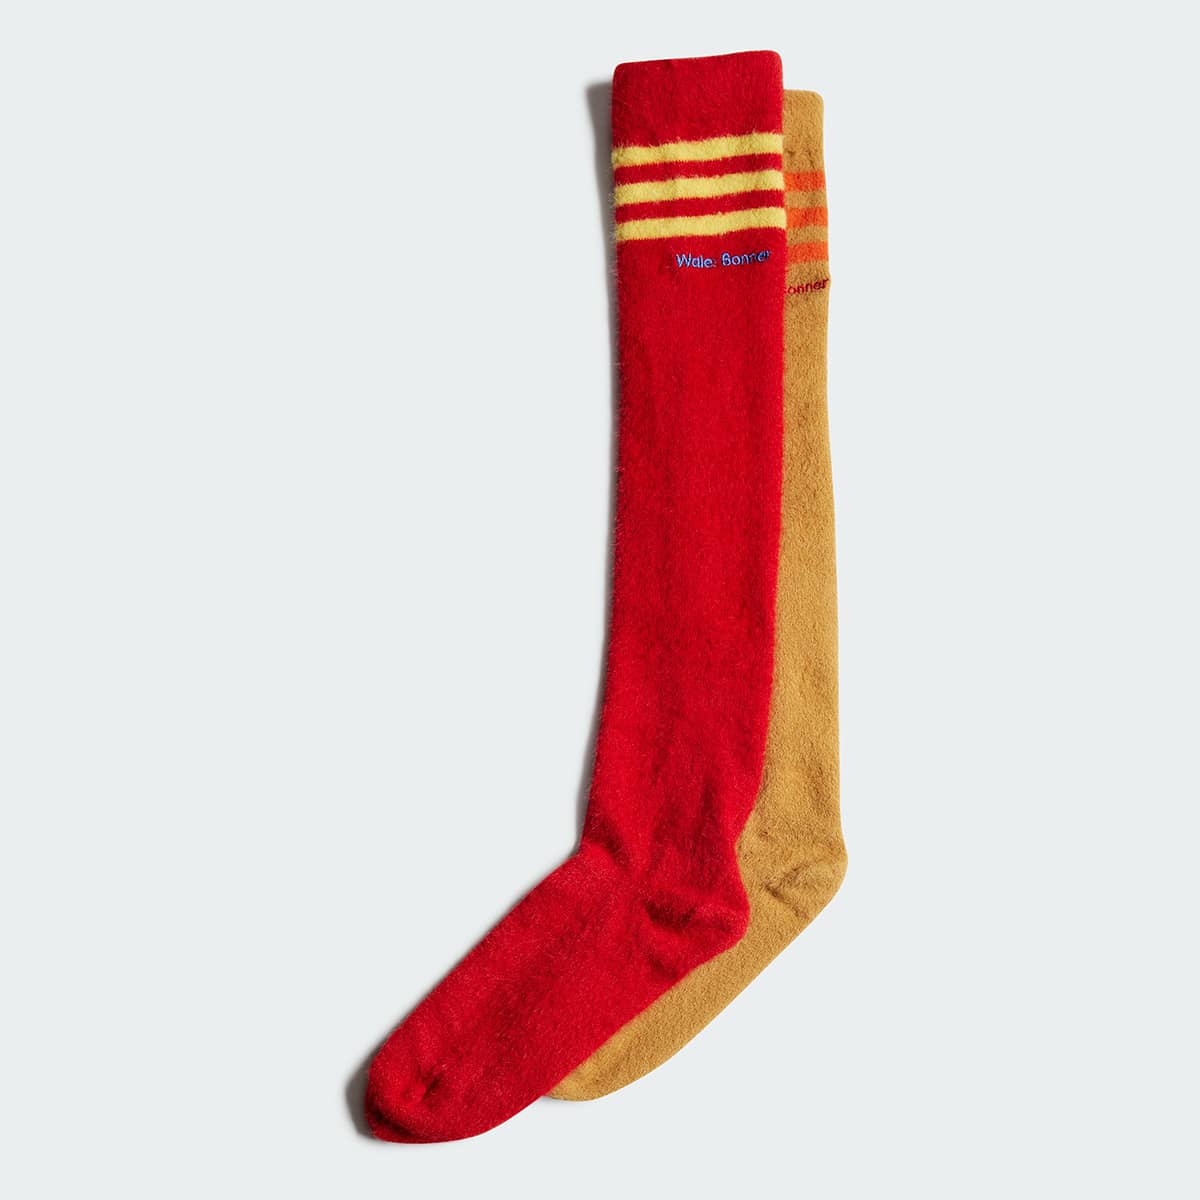 웨일즈 보너 x 아디다스 양말(Wales Bonner x adidas Socks)-HG8852